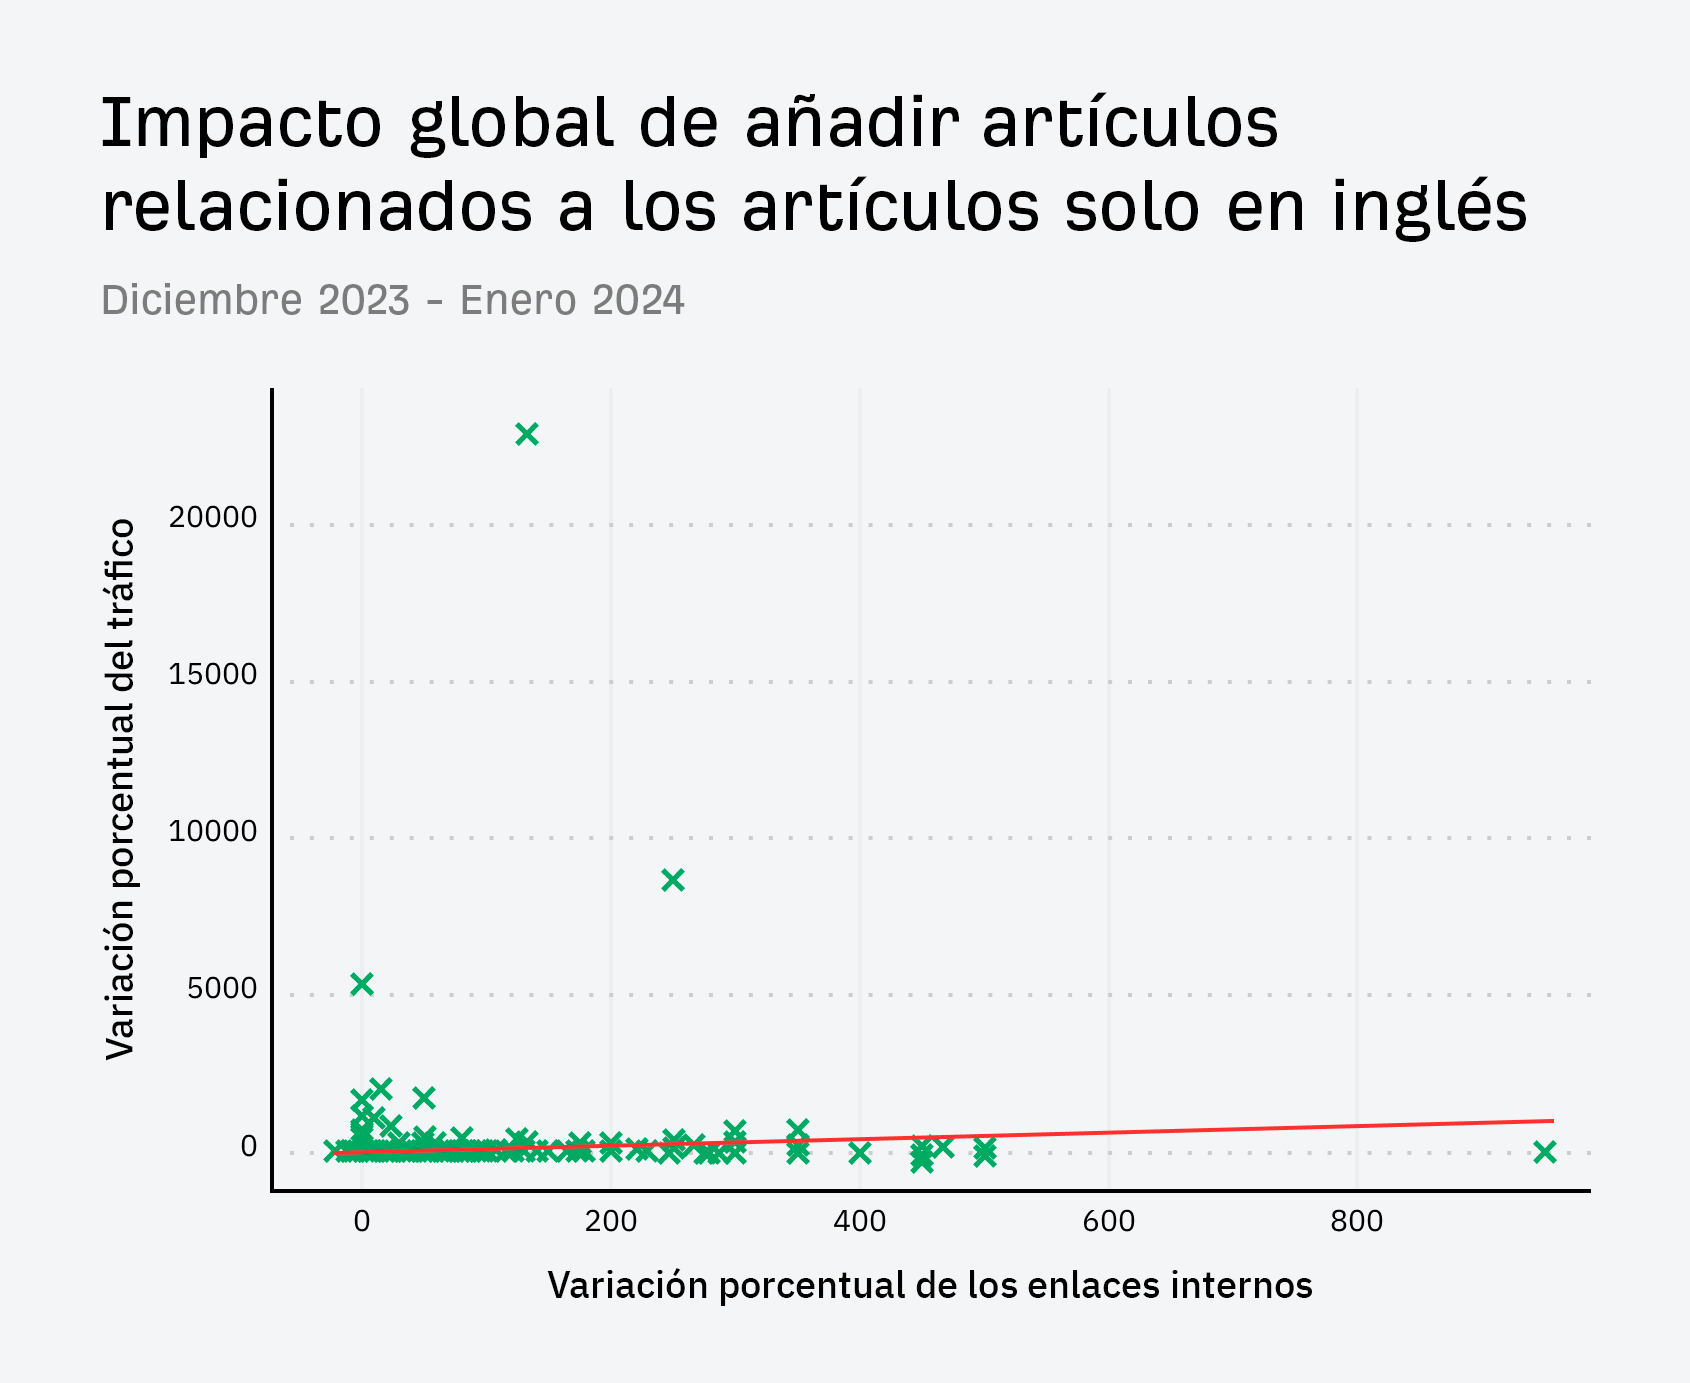 Impacto global de añadir artículos relacionados a los artículos solo en inglés.